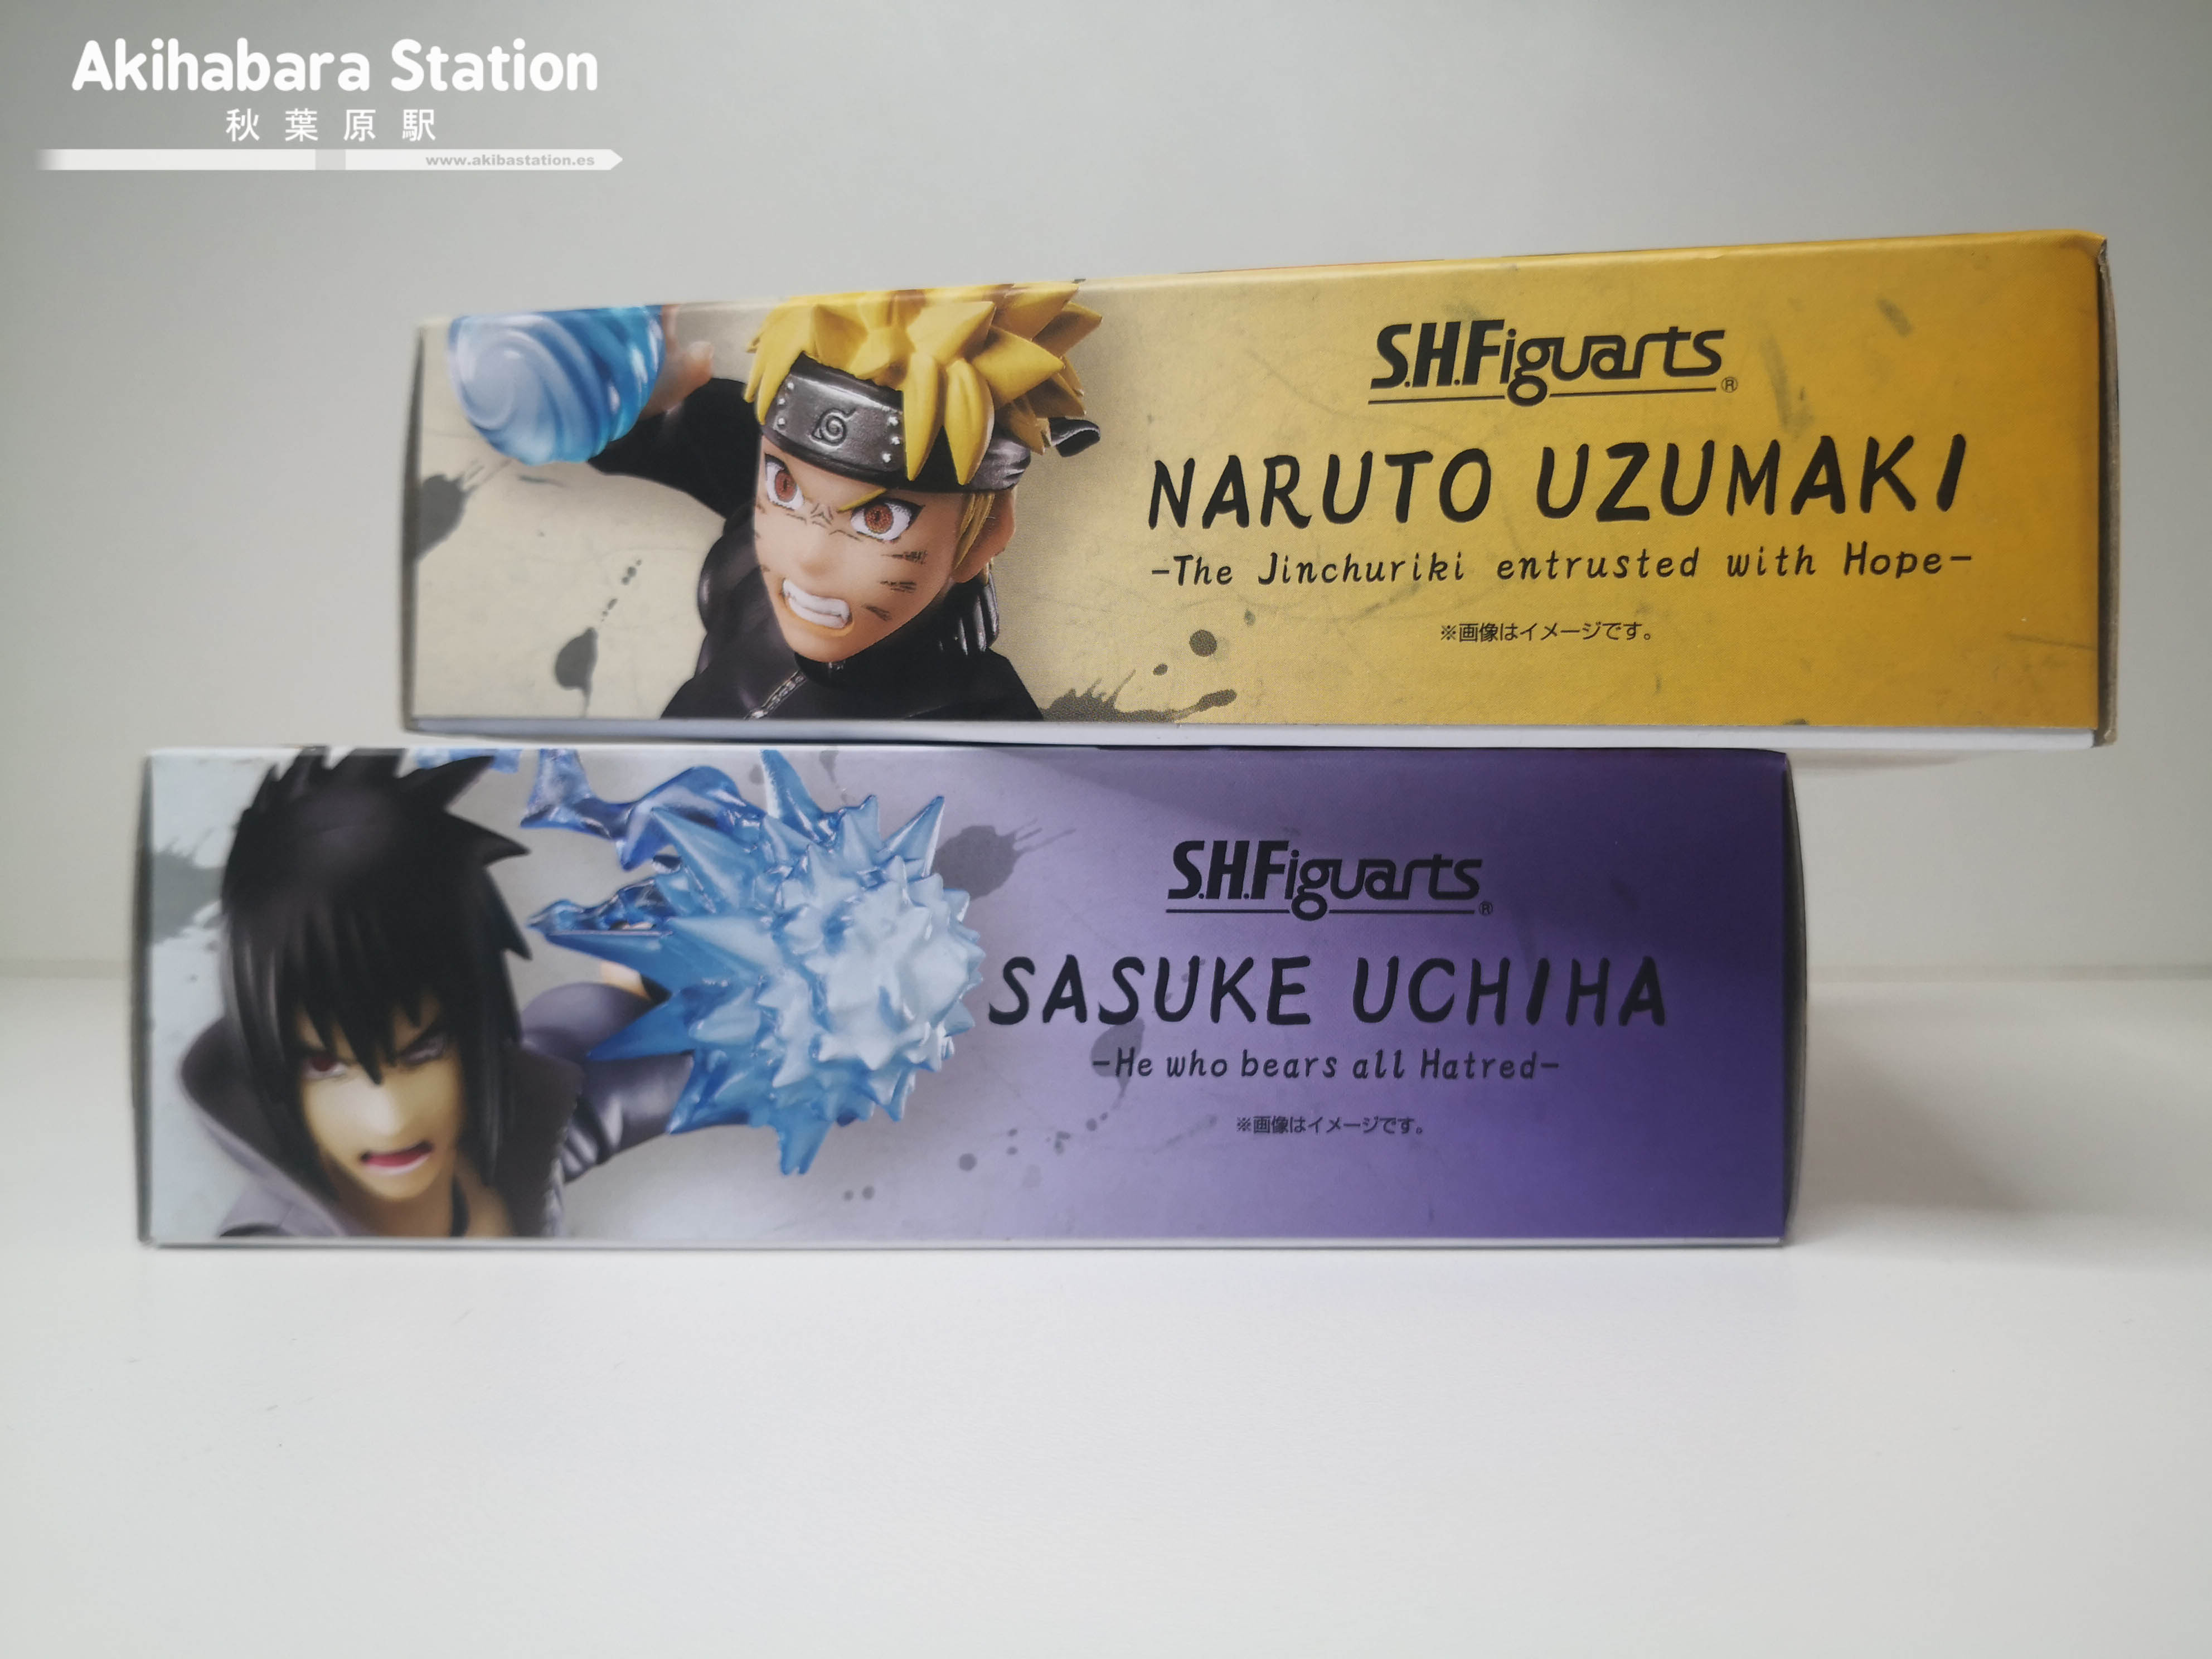 Review de los S.H.Figuarts Naruto Uzumaki  Sasuke Uchiha - Tamashii Nations